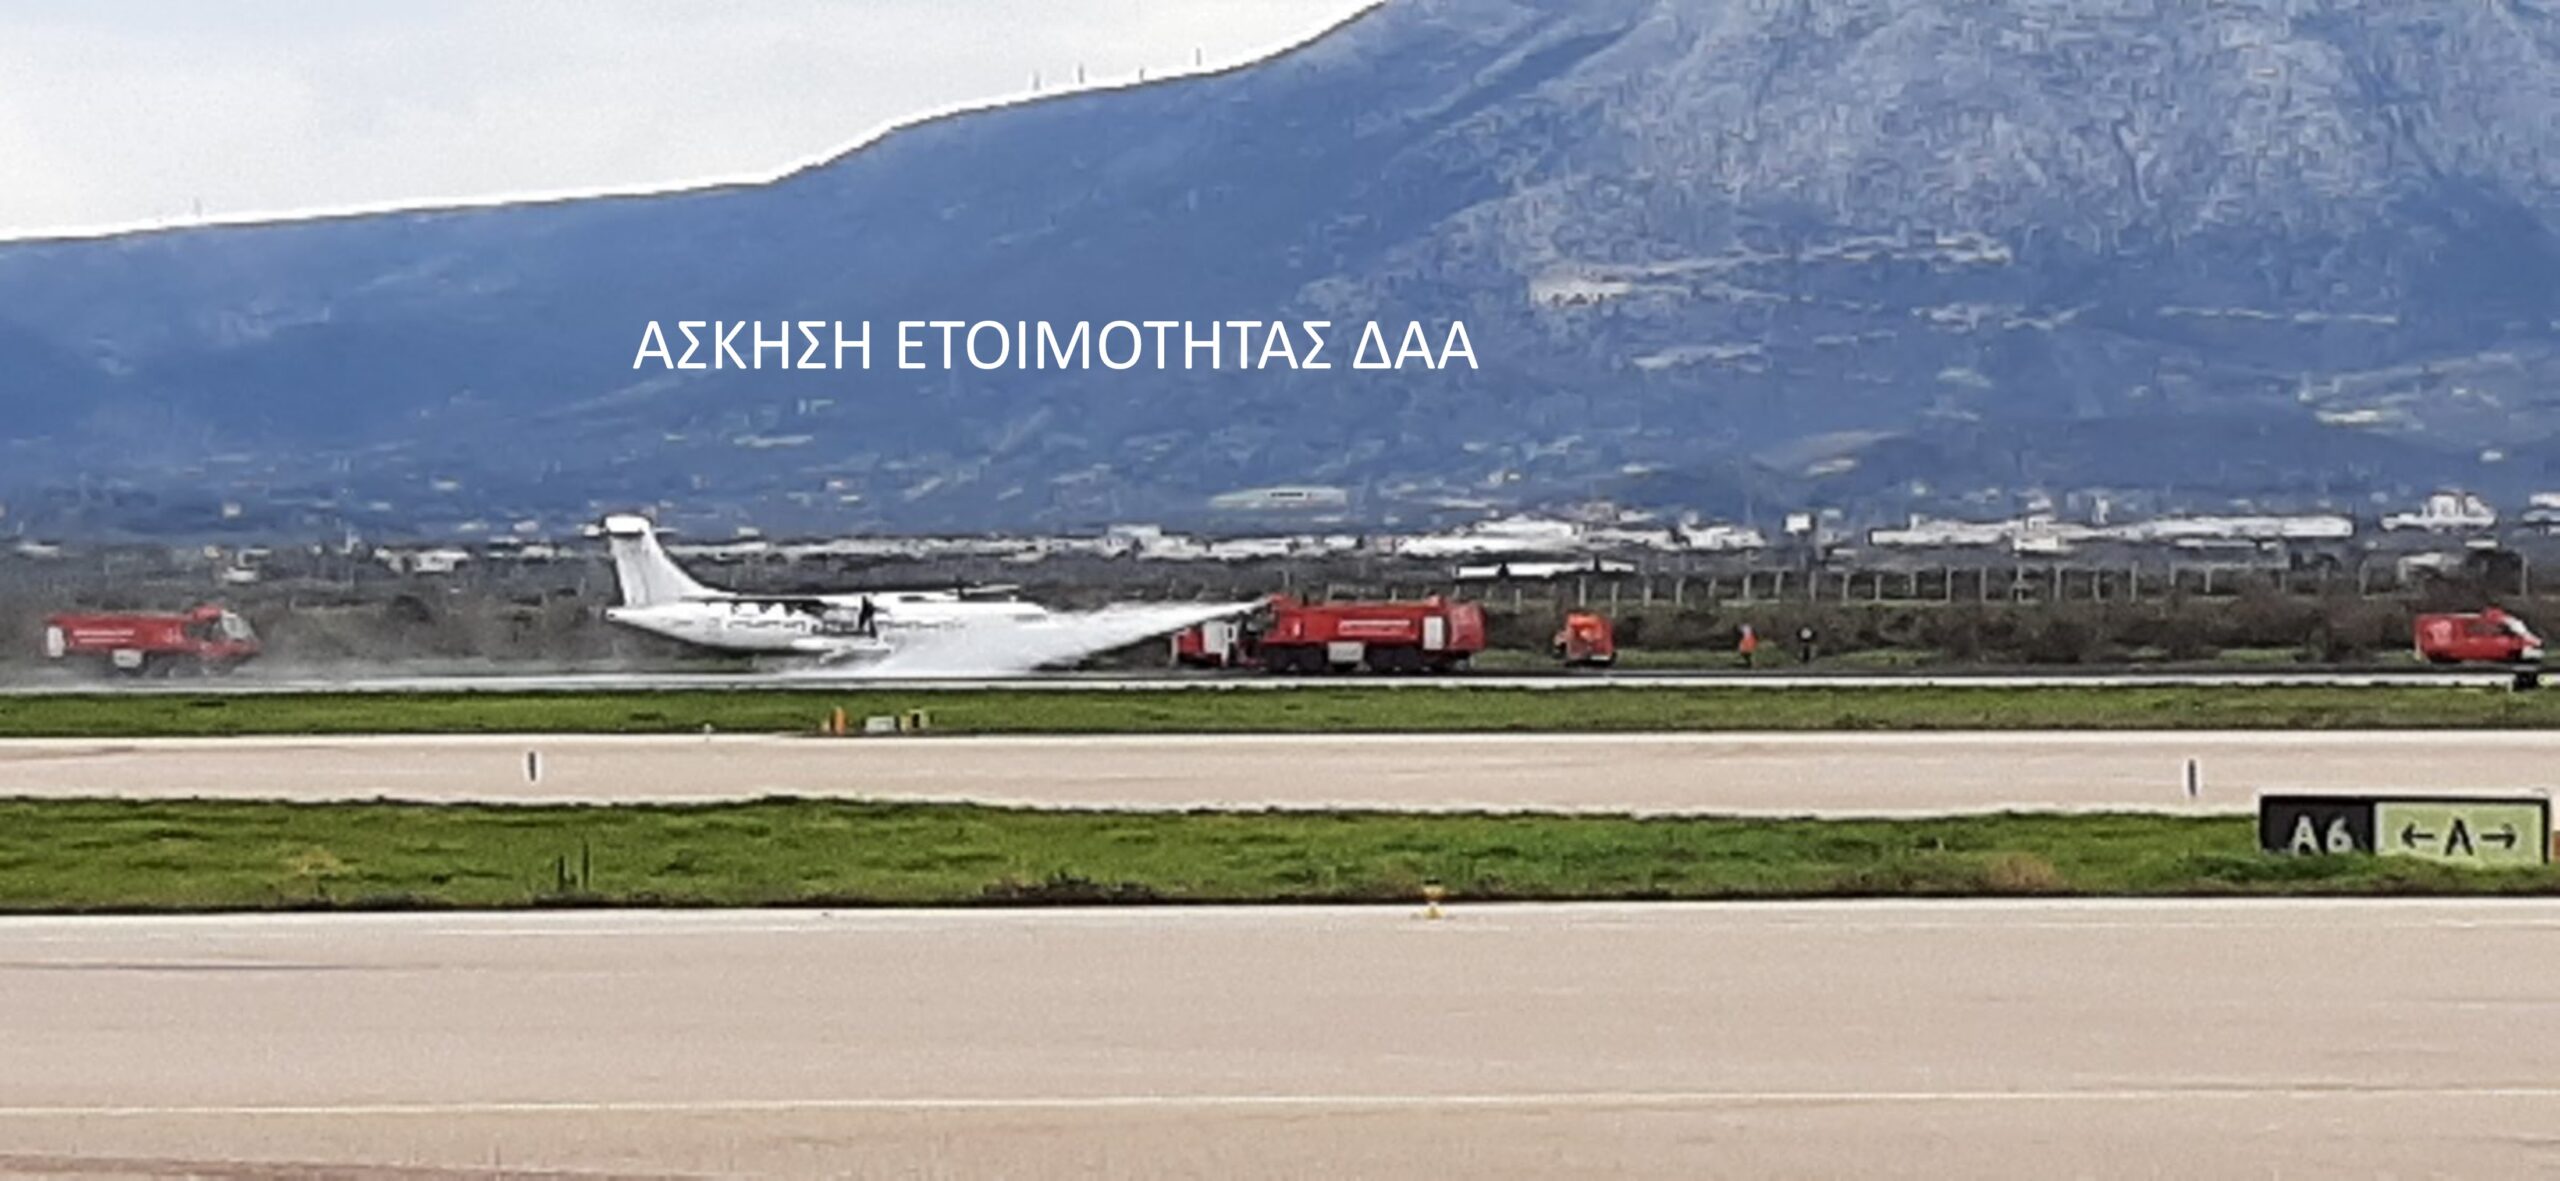 Άσκηση ετοιμότητας ευρείας κλίμακας στον Αερολιμένα Αθηνών